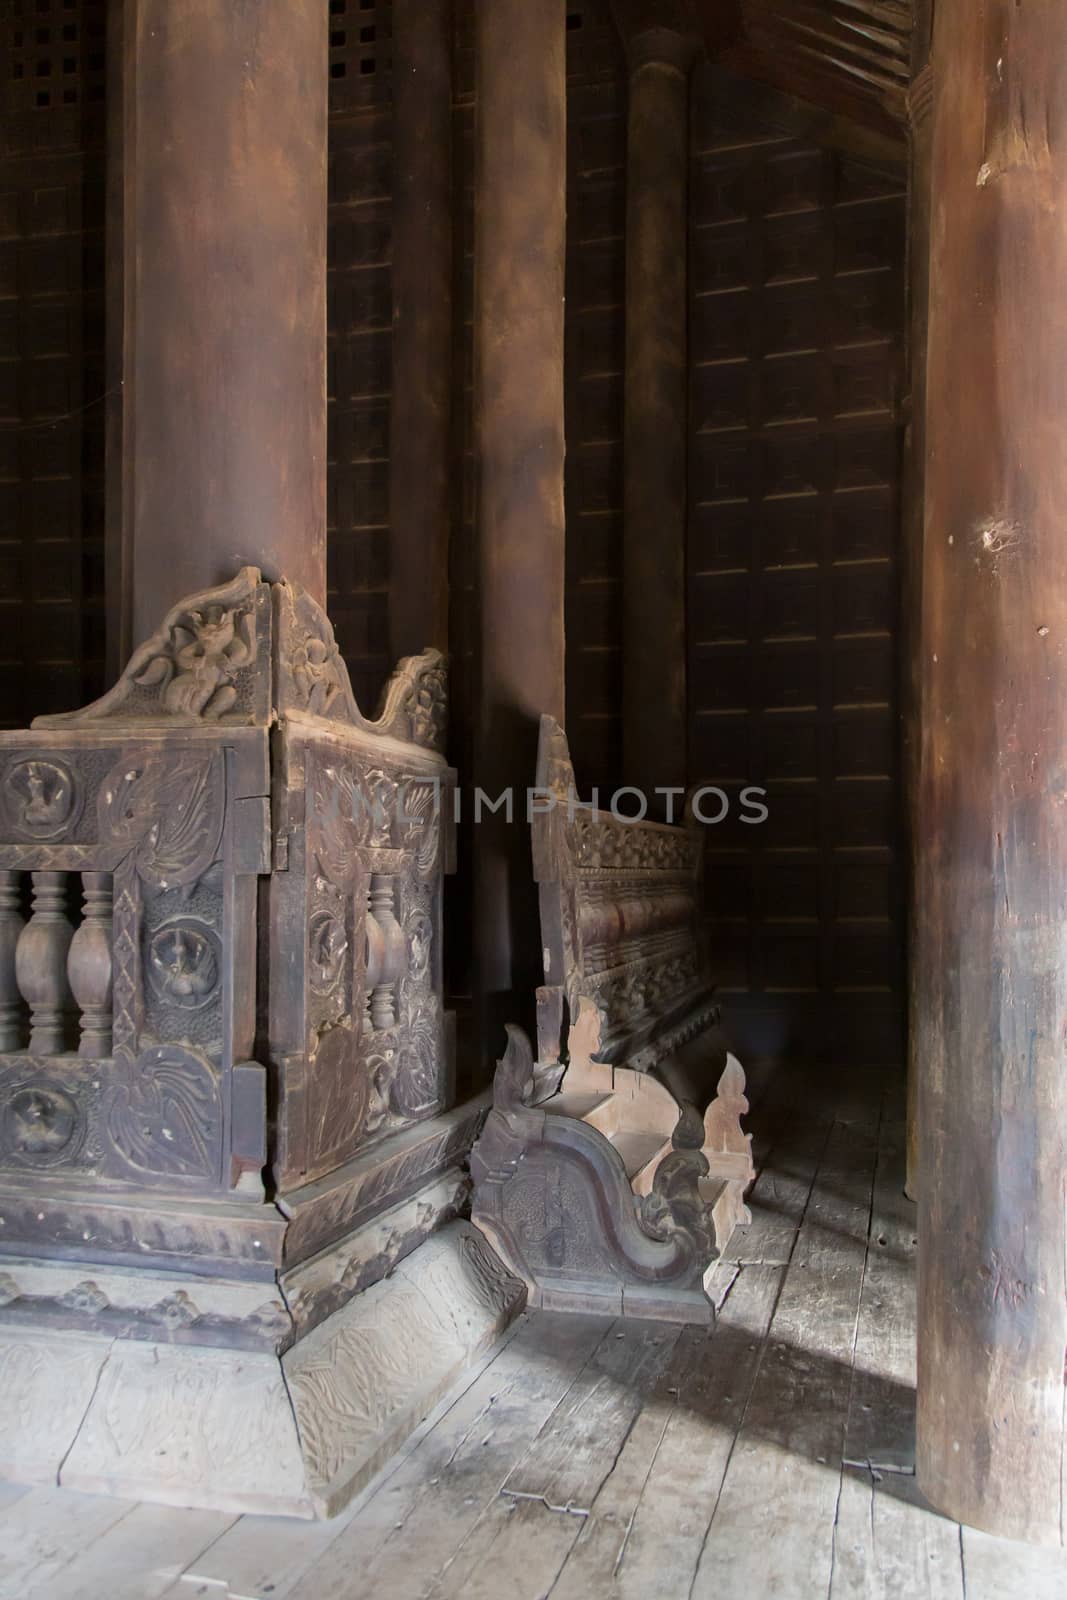 Bagaya Monastery, Inwa Myanmar 12/12/2015 Interior of teak built monastery  by kgboxford